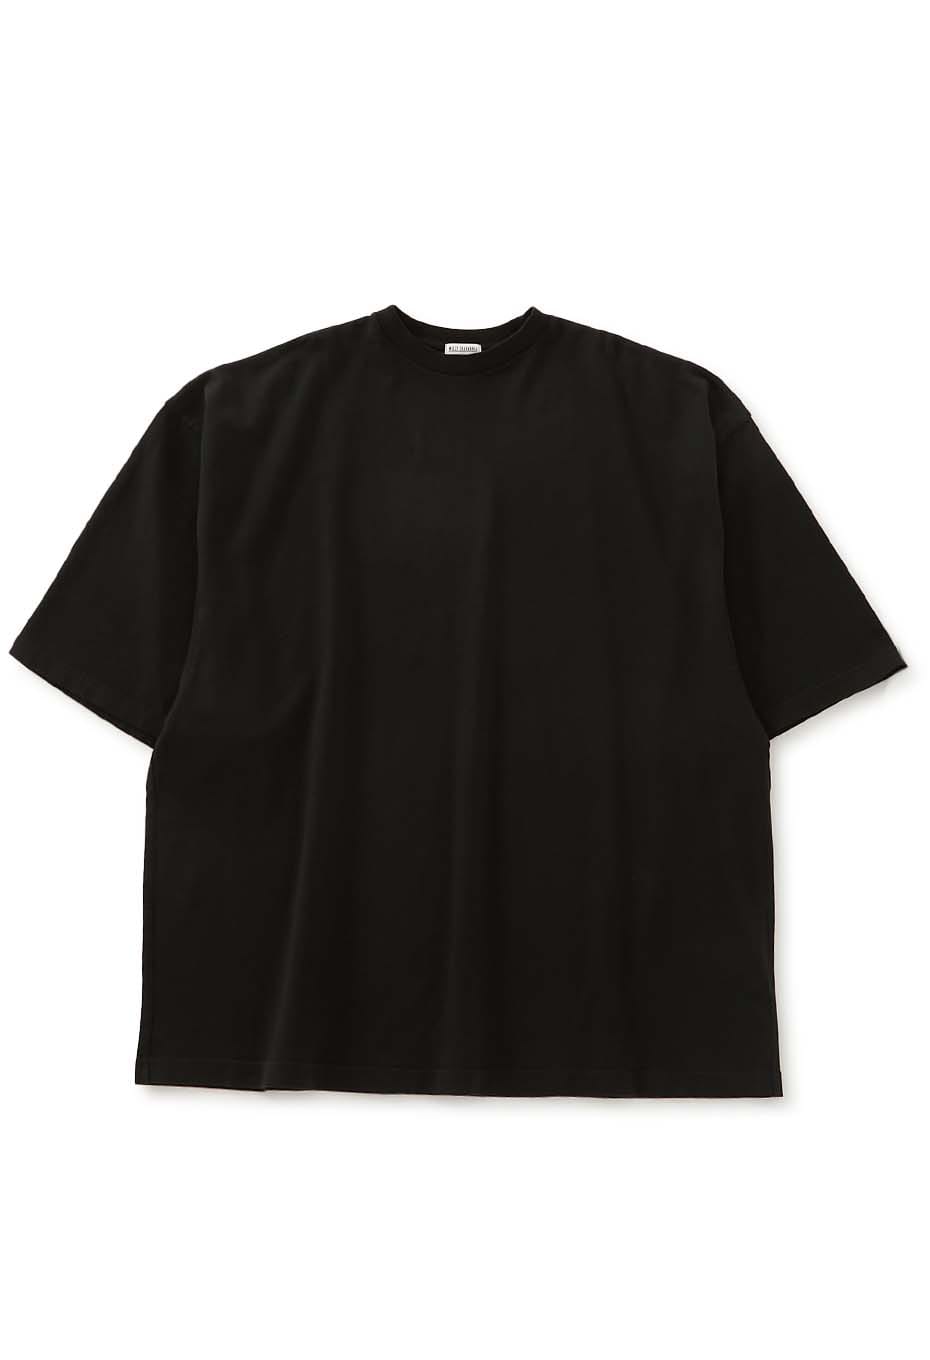 高価値セリー 【美品】WILLY Tシャツ L CHAVARRIA Tシャツ/カットソー